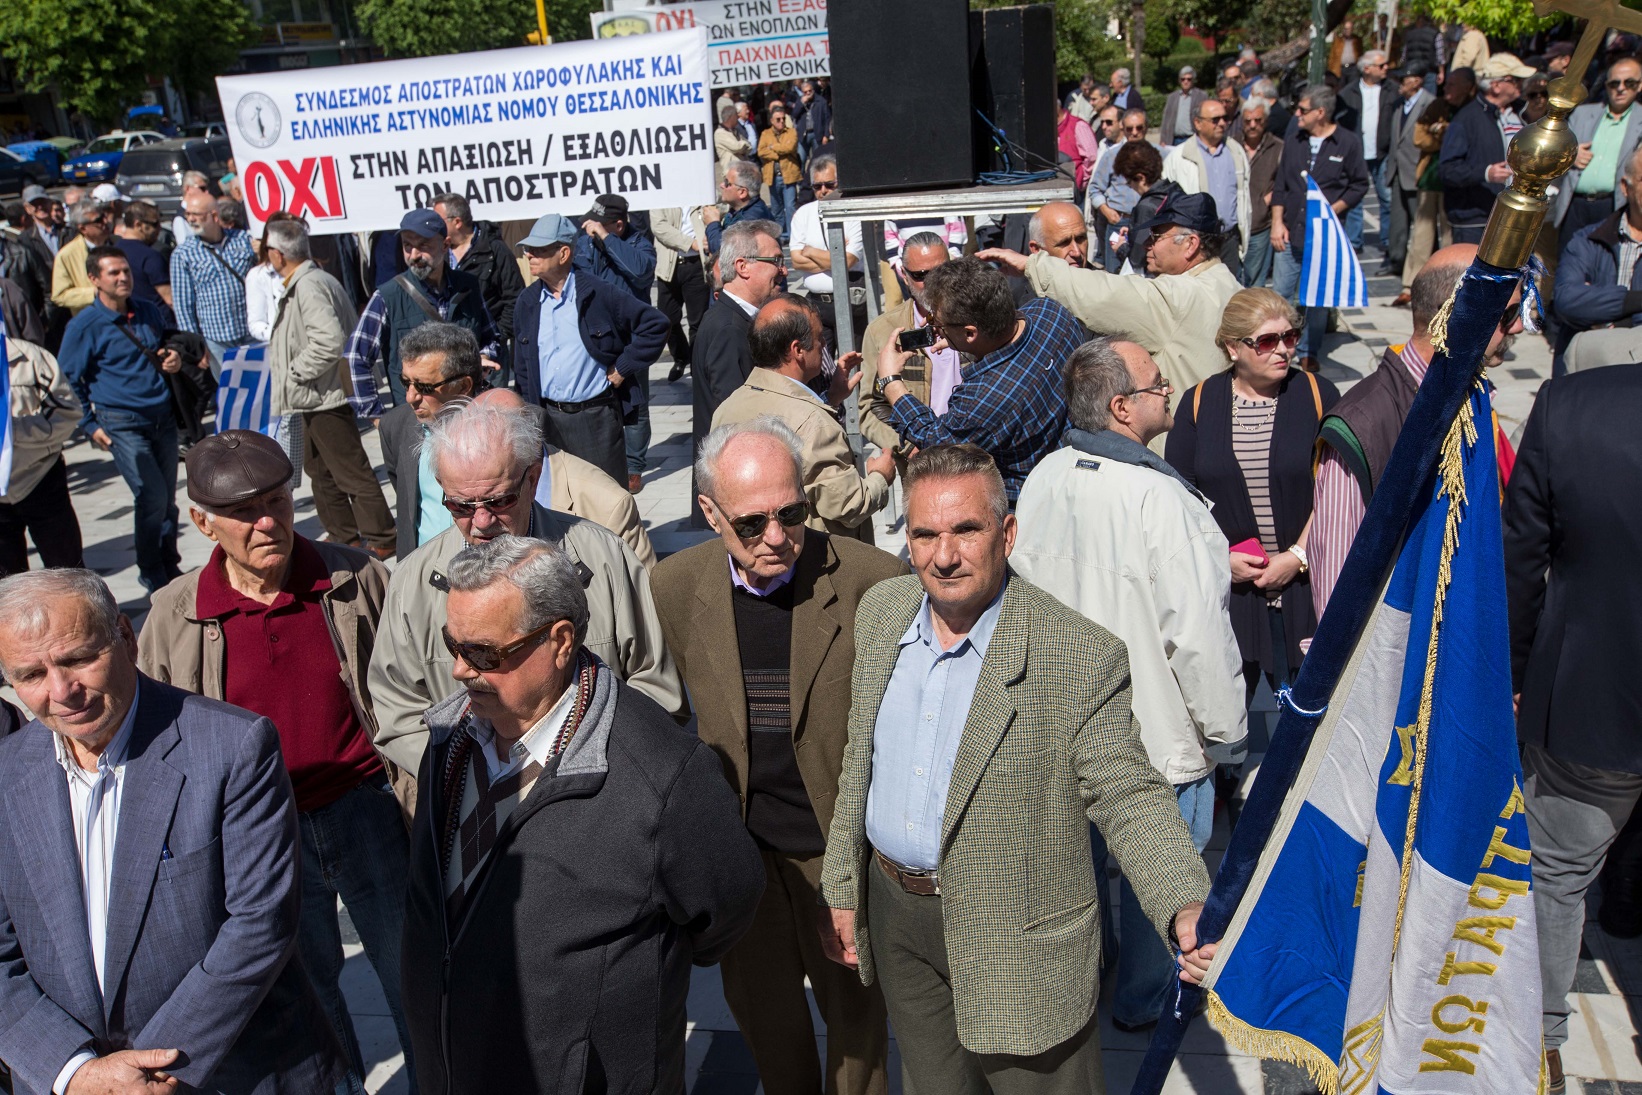 Απόστρατοι αξιωματικοί του στρατού αεροπορίας και ναυτικού πραγματοποιούν συγκέντρωση διαμαρτυρίας για τα εθνικά θέματα στο άγαλμα Βενιζέλου στην Θεσσαλονίκη. Θεσσαλονίκη, Παρασκευή 15 Σεπτεμβρίου 2016. ΑΠΕ ΜΠΕ/PIXEL/ΜΠΑΡΜΠΑΡΟΥΣΗΣ ΣΩΤΗΡΗΣ